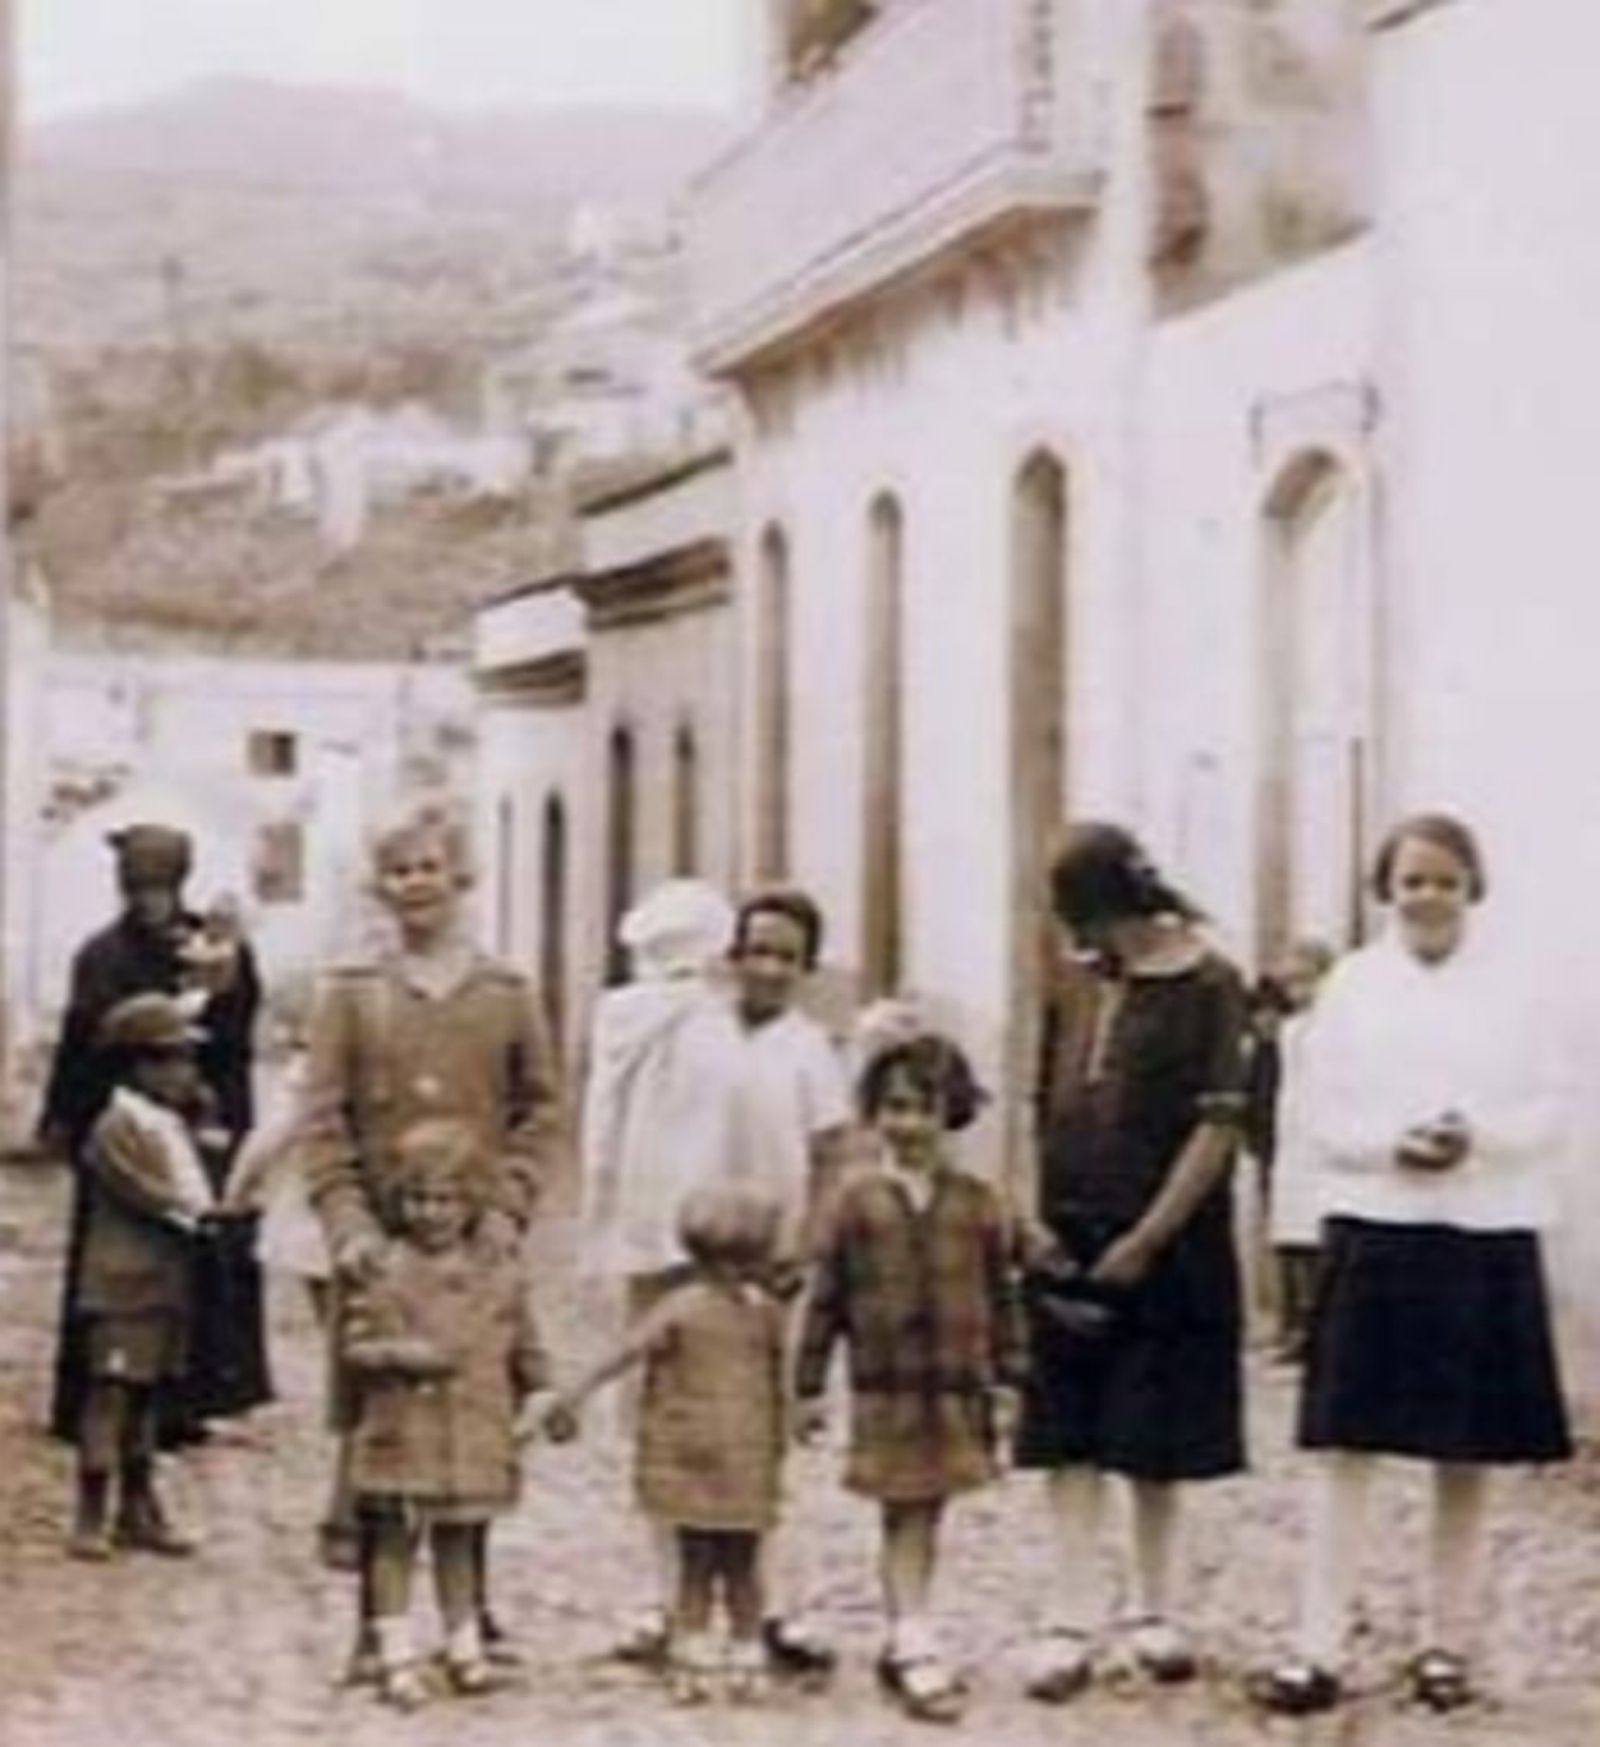 Un grupo de mujeres y niñas en la misma vía, en la década de los años 50 del pasado siglo.